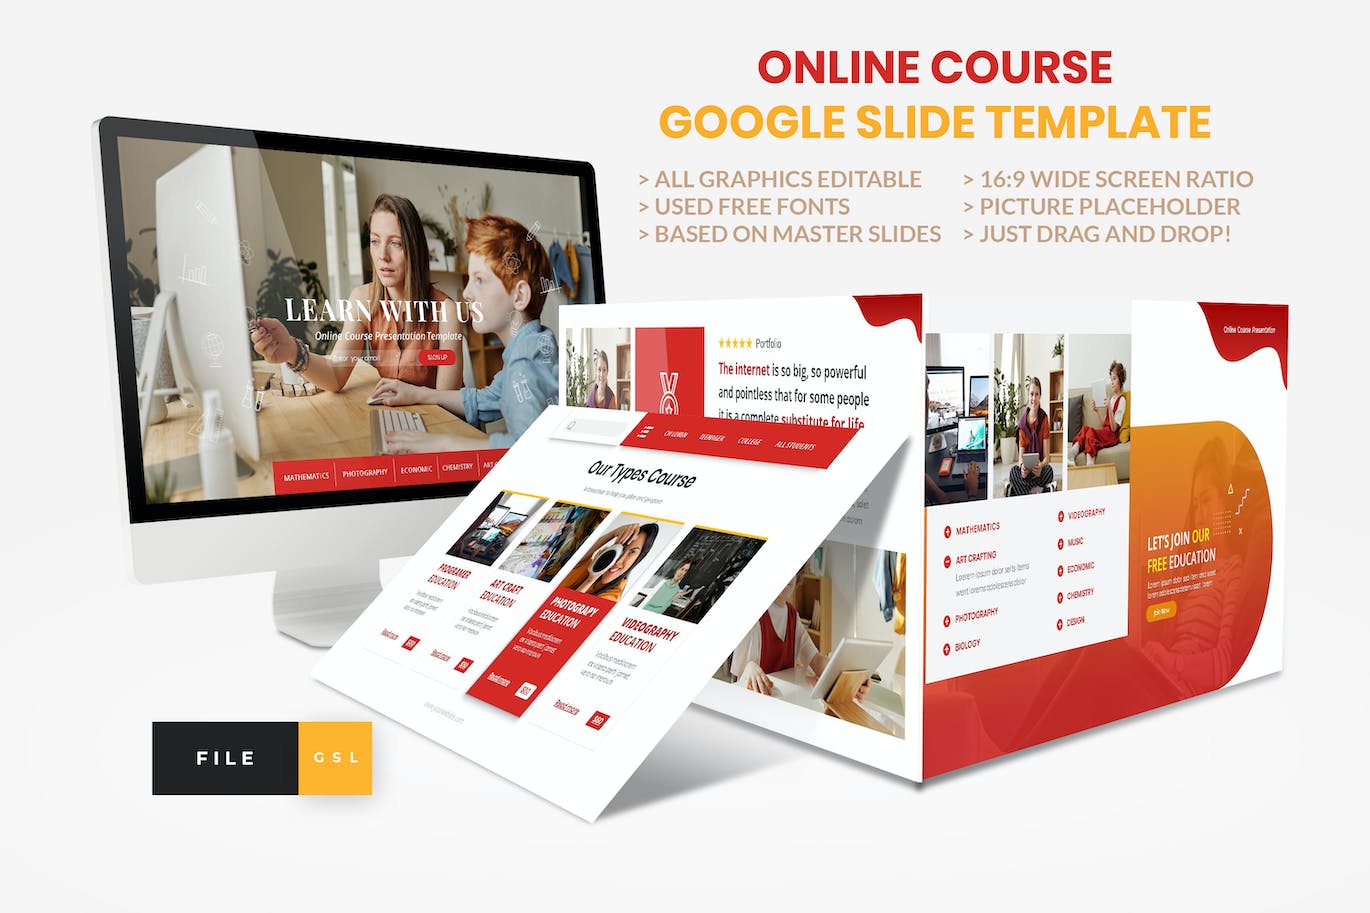 在线课程教育谷歌幻灯片创意模板 Online Course – Education Google Slide Template 幻灯图表 第1张